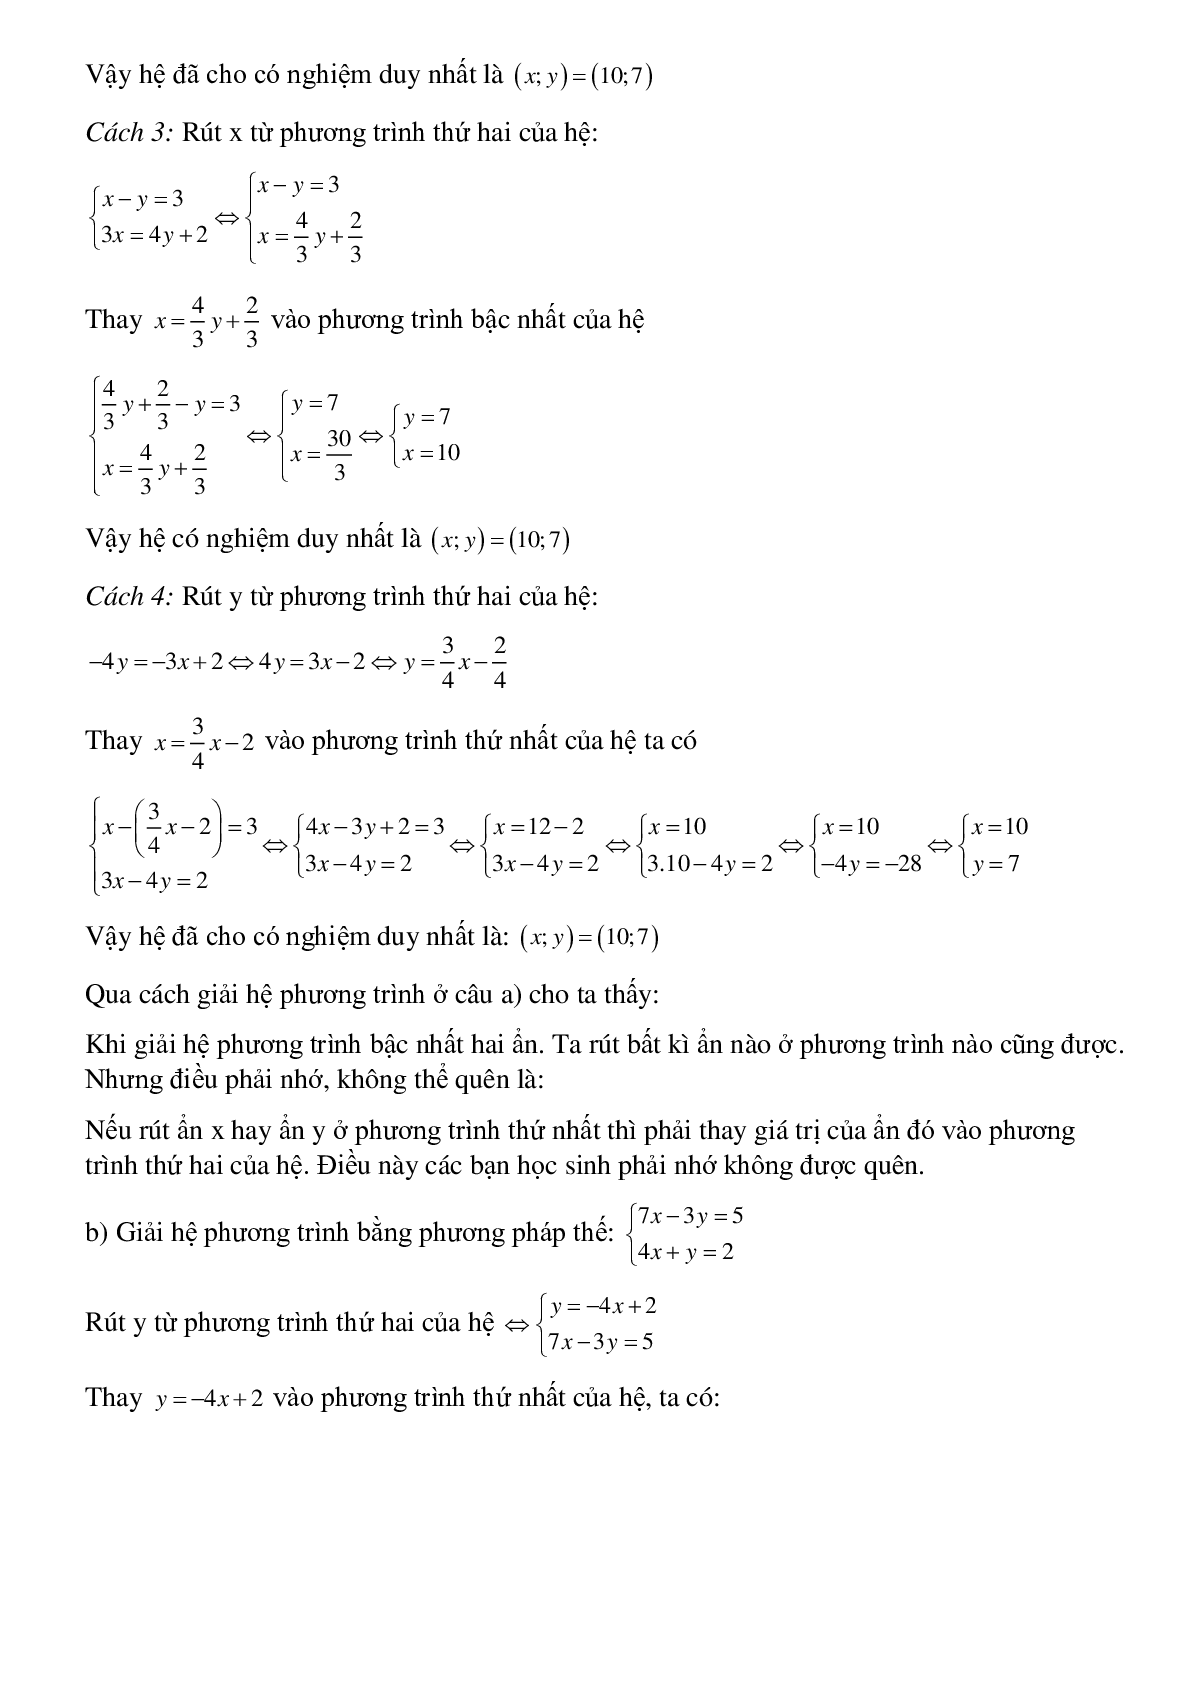 50 Bài tập Giải hệ phương trình bằng phương pháp thế (có đáp án)- Toán 9 (trang 2)